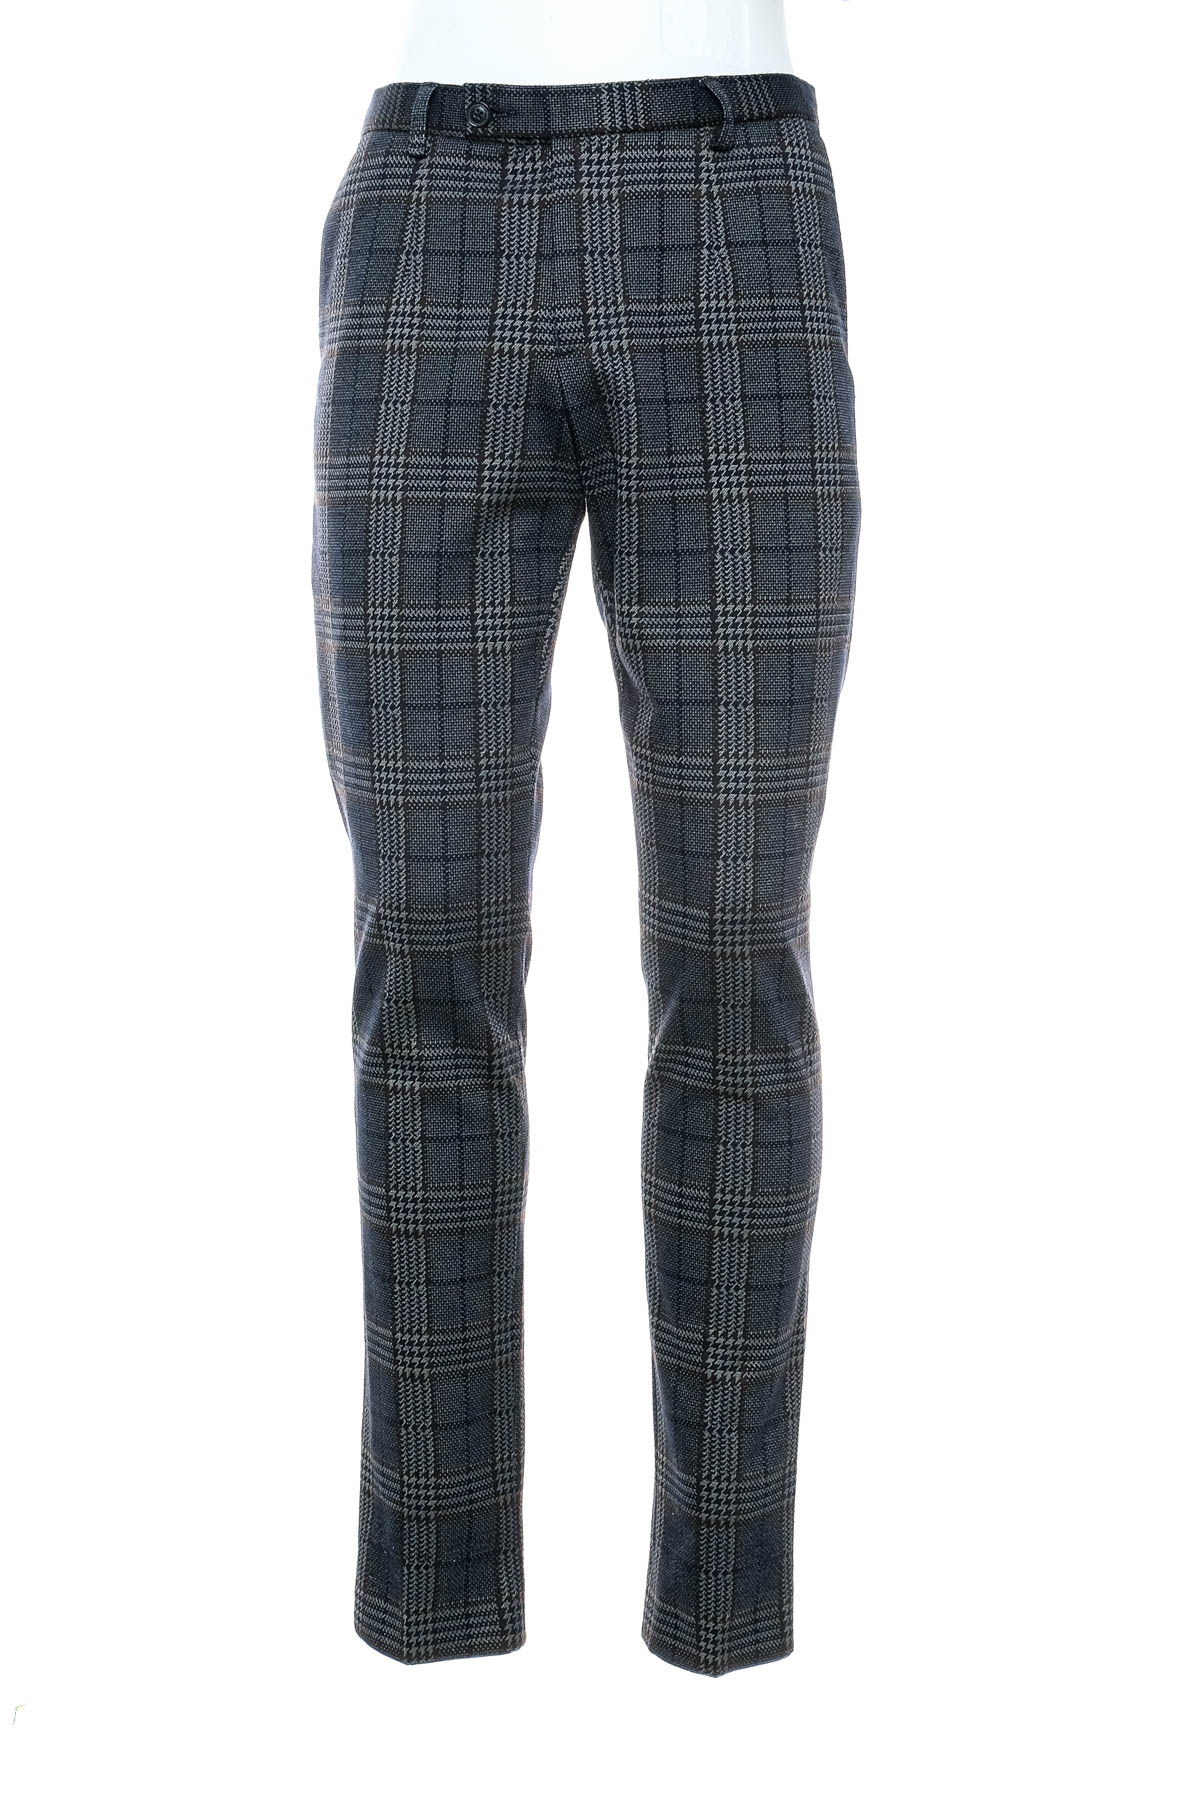 Pantalon pentru bărbați - Finshley & Harding - 0